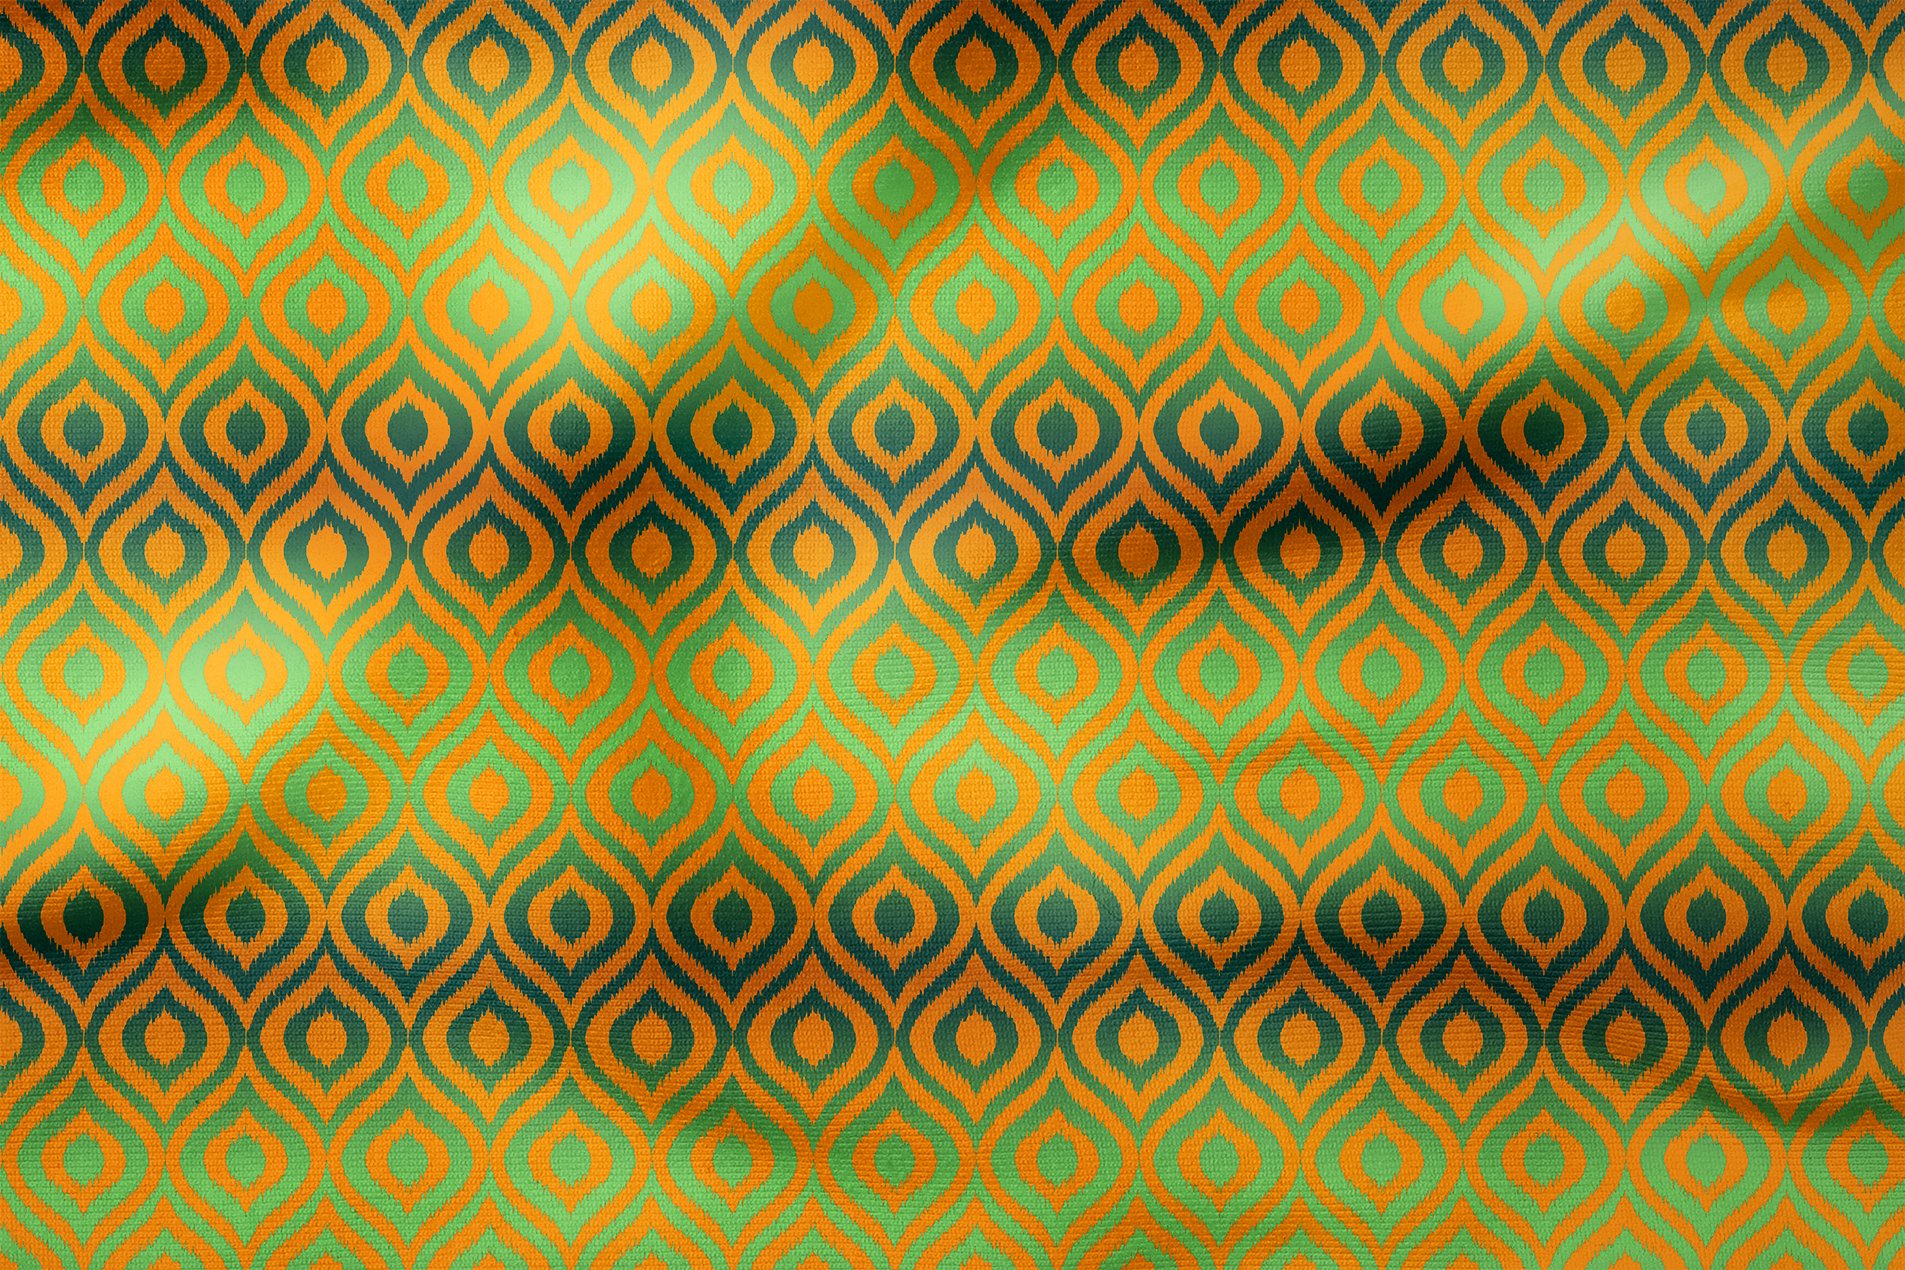 Turuncu Yeşil İkat Desenli Dijital Baskılı Kumaş